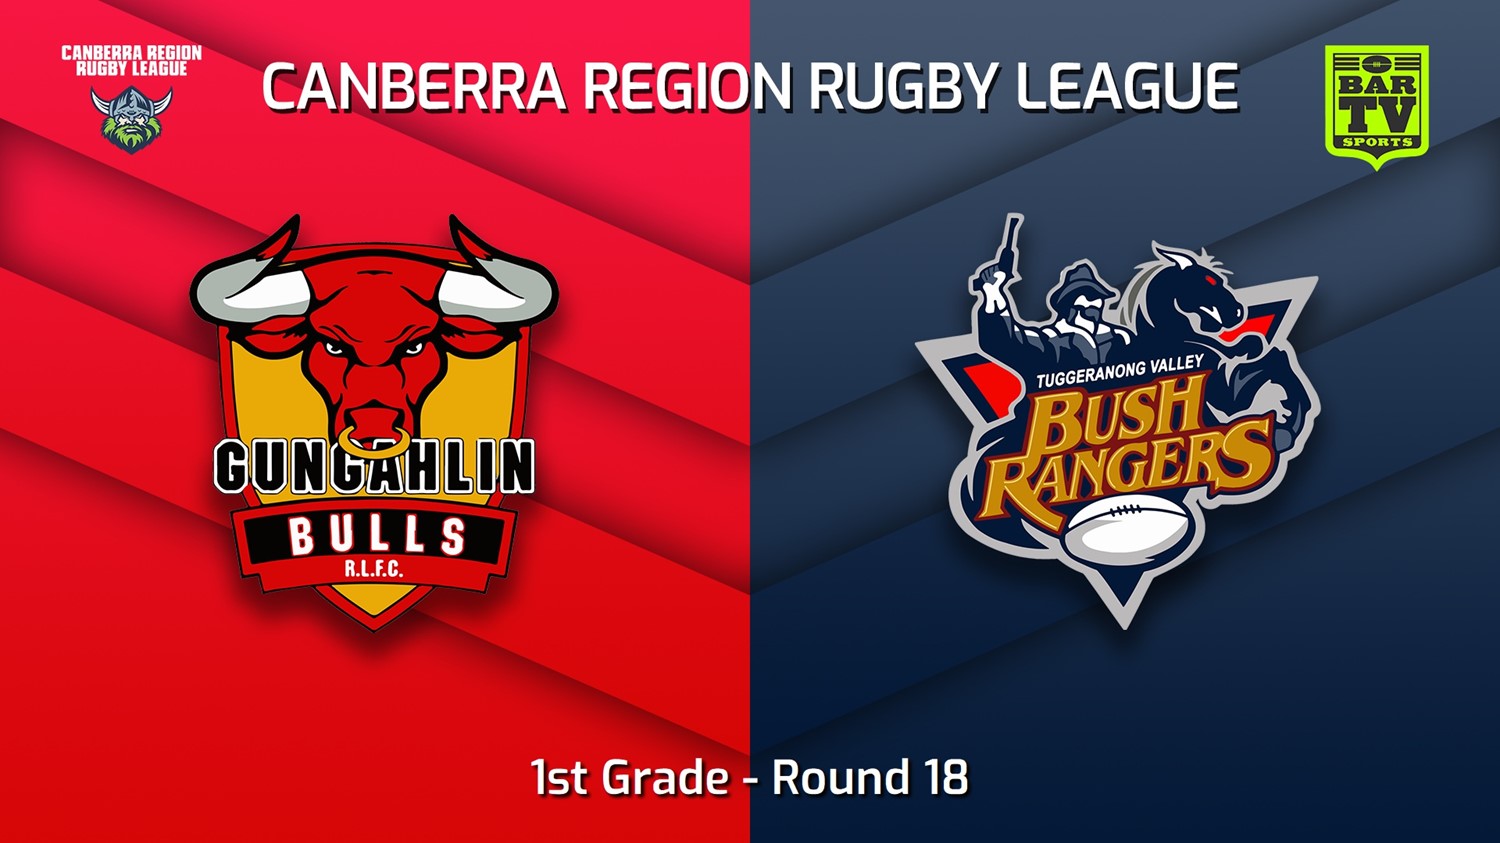 220827-Canberra Round 18 - 1st Grade - Gungahlin Bulls v Tuggeranong Bushrangers Slate Image